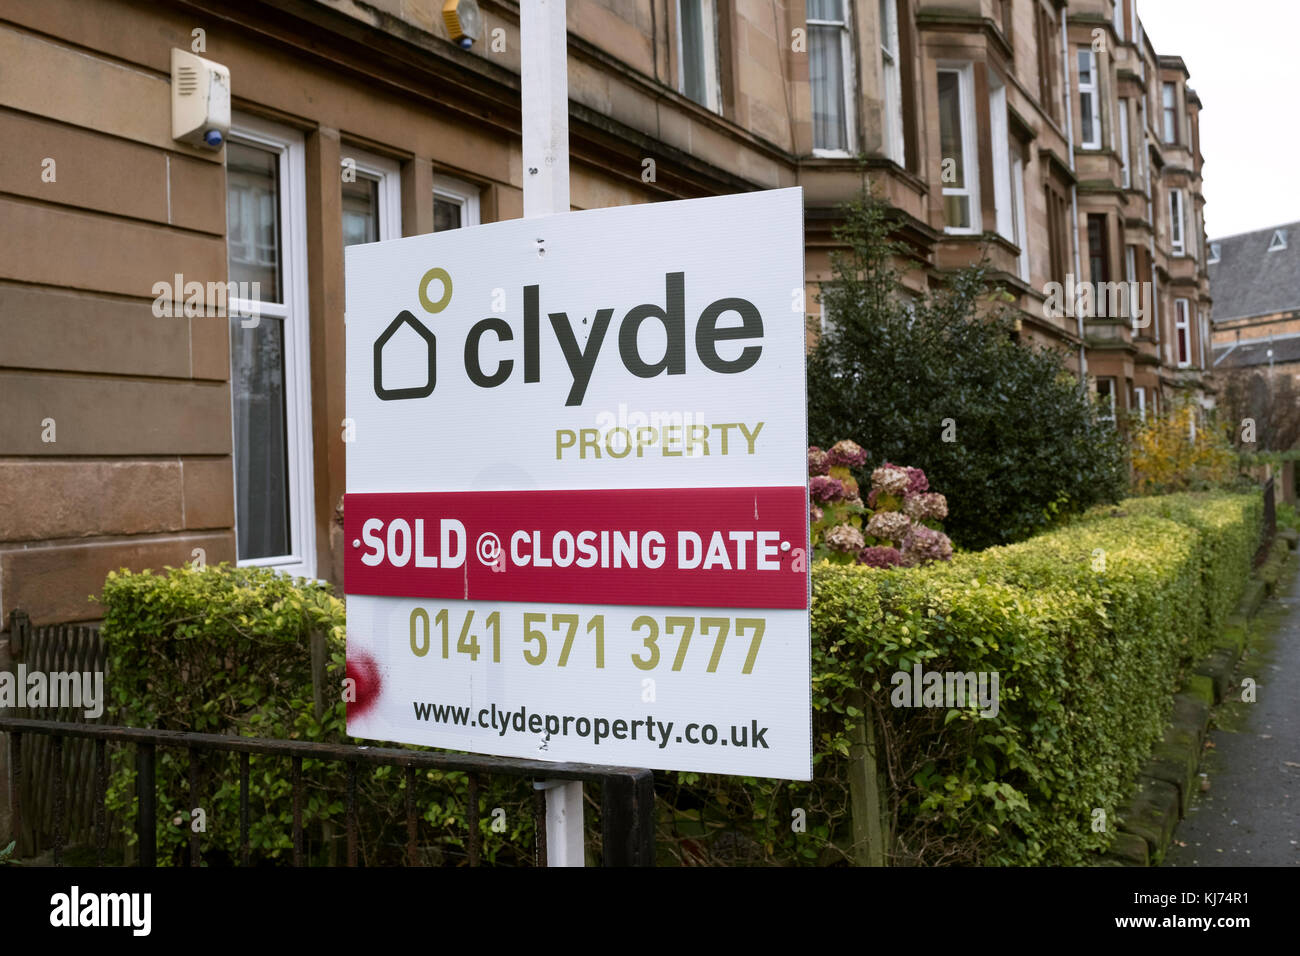 Se vende signo fuera tenement edificio de apartamentos en el distrito govanhill de Glasgow, Escocia, Reino Unido Foto de stock